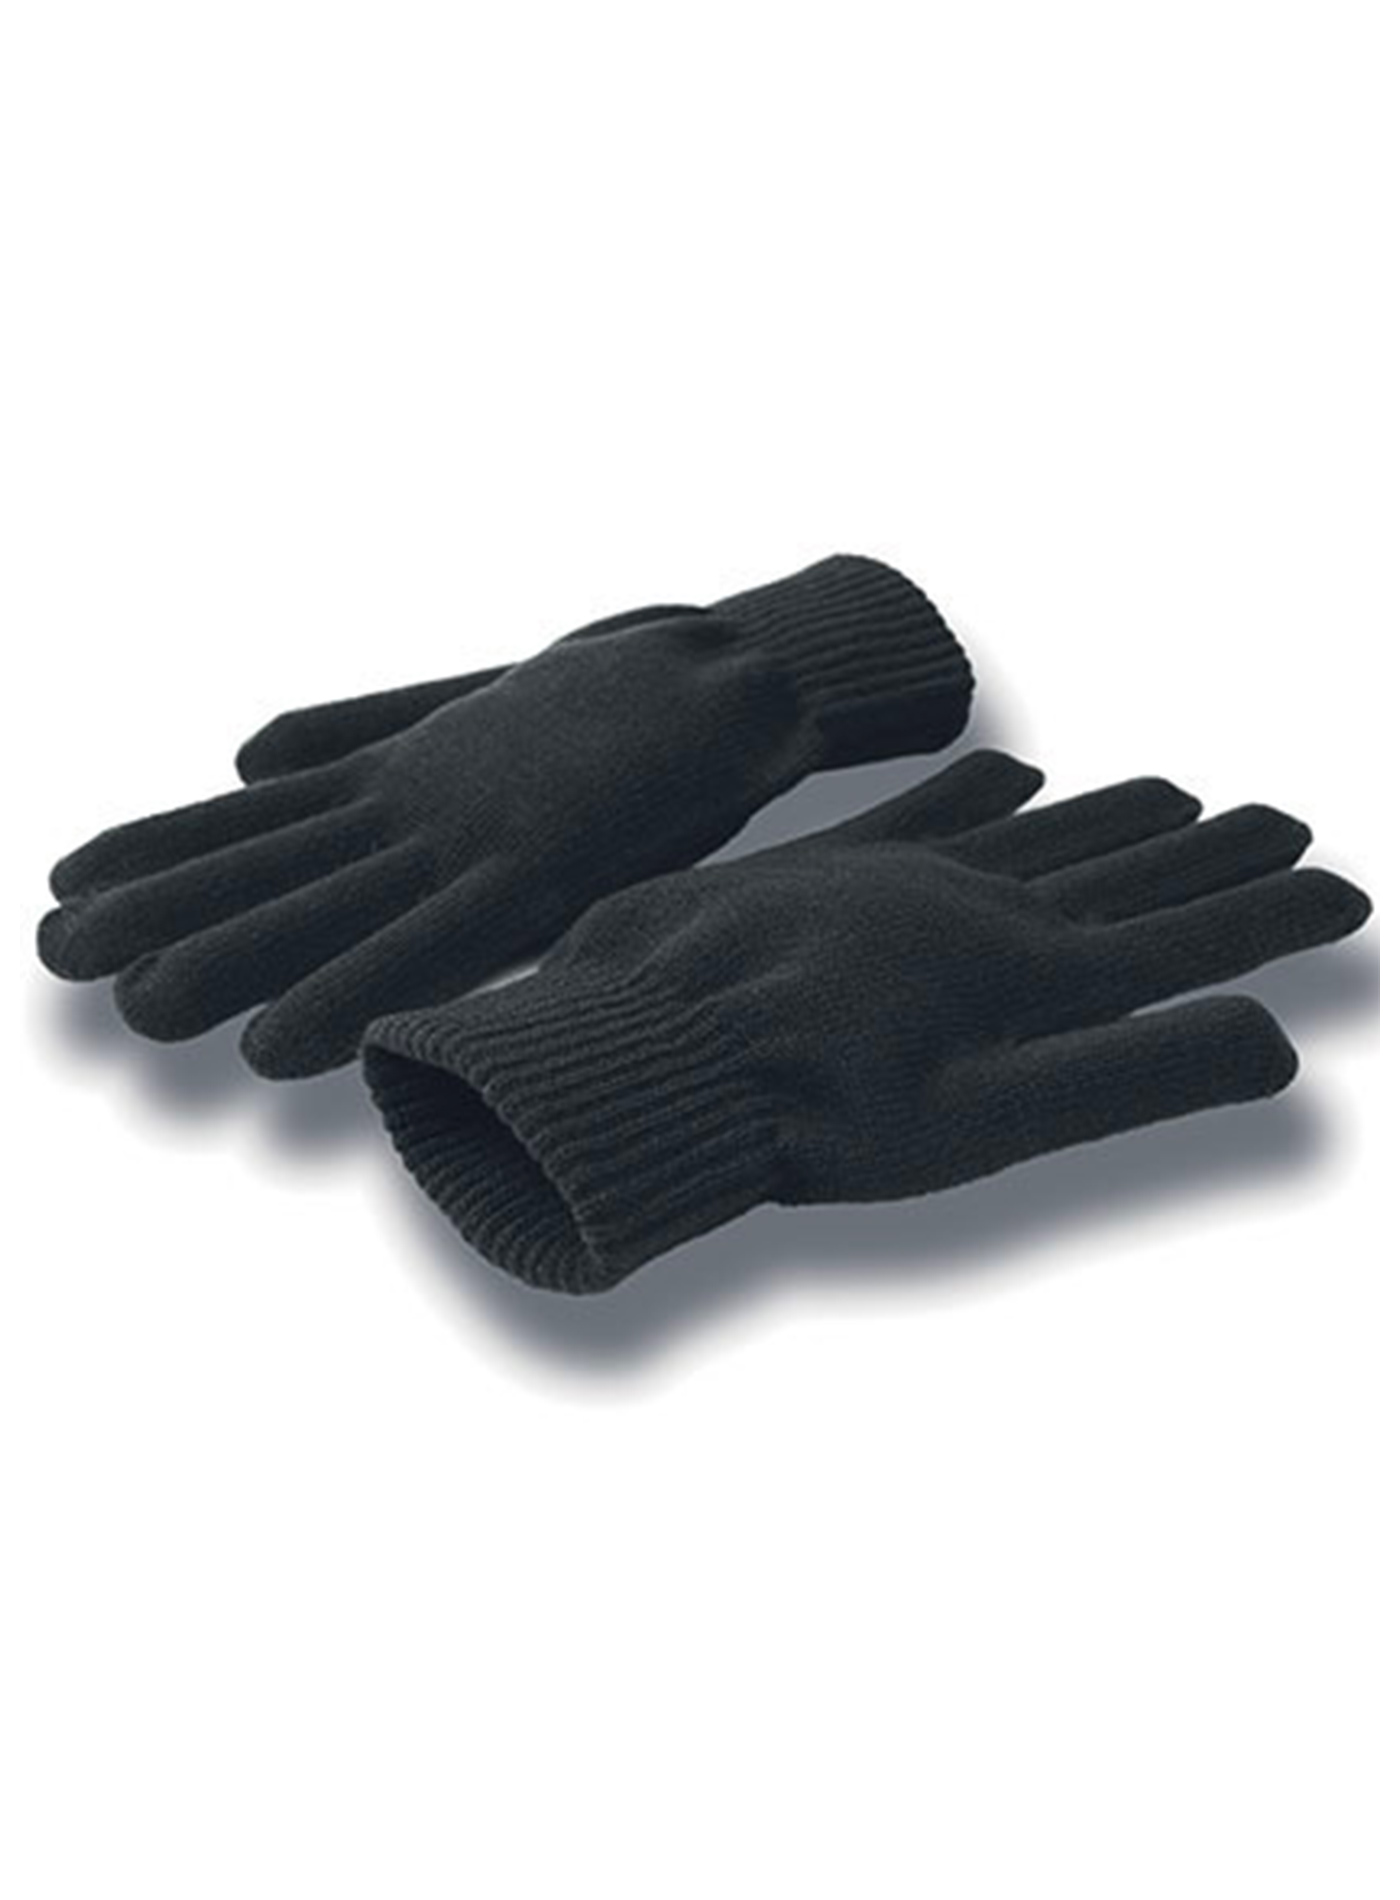 Unisex zimní rukavice Atlantis Magic - černá univerzal